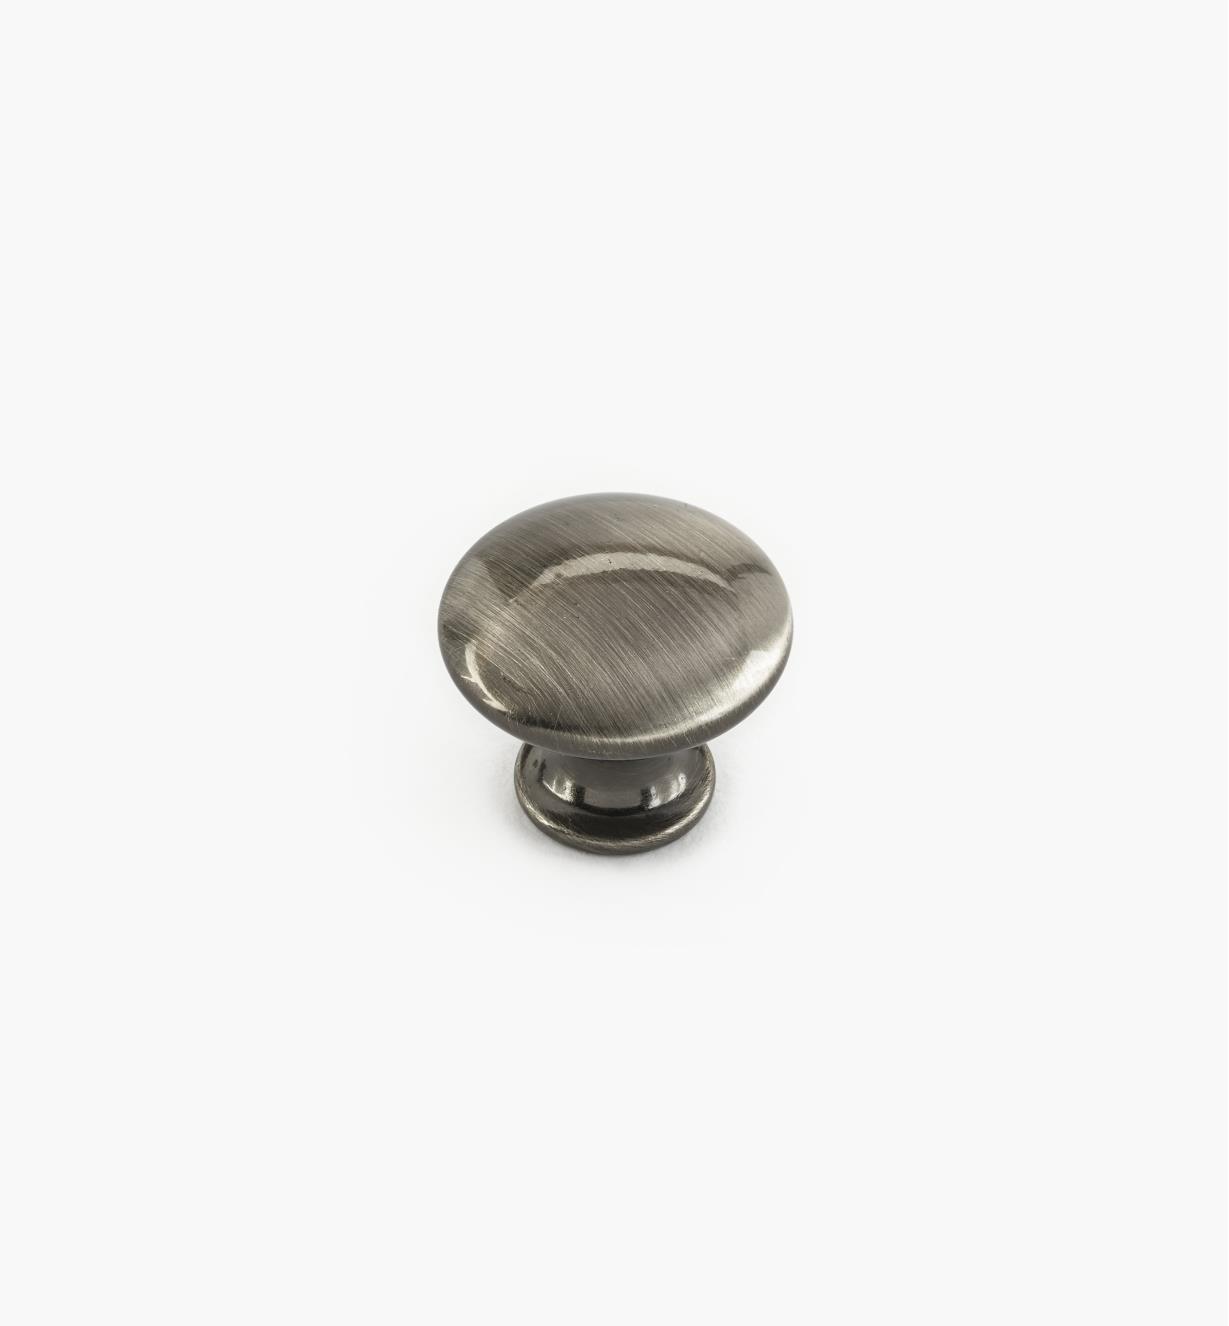 02W4363 - Bouton de 3/4 po x 5/8 po, collection classique, fini nickel noir brossé